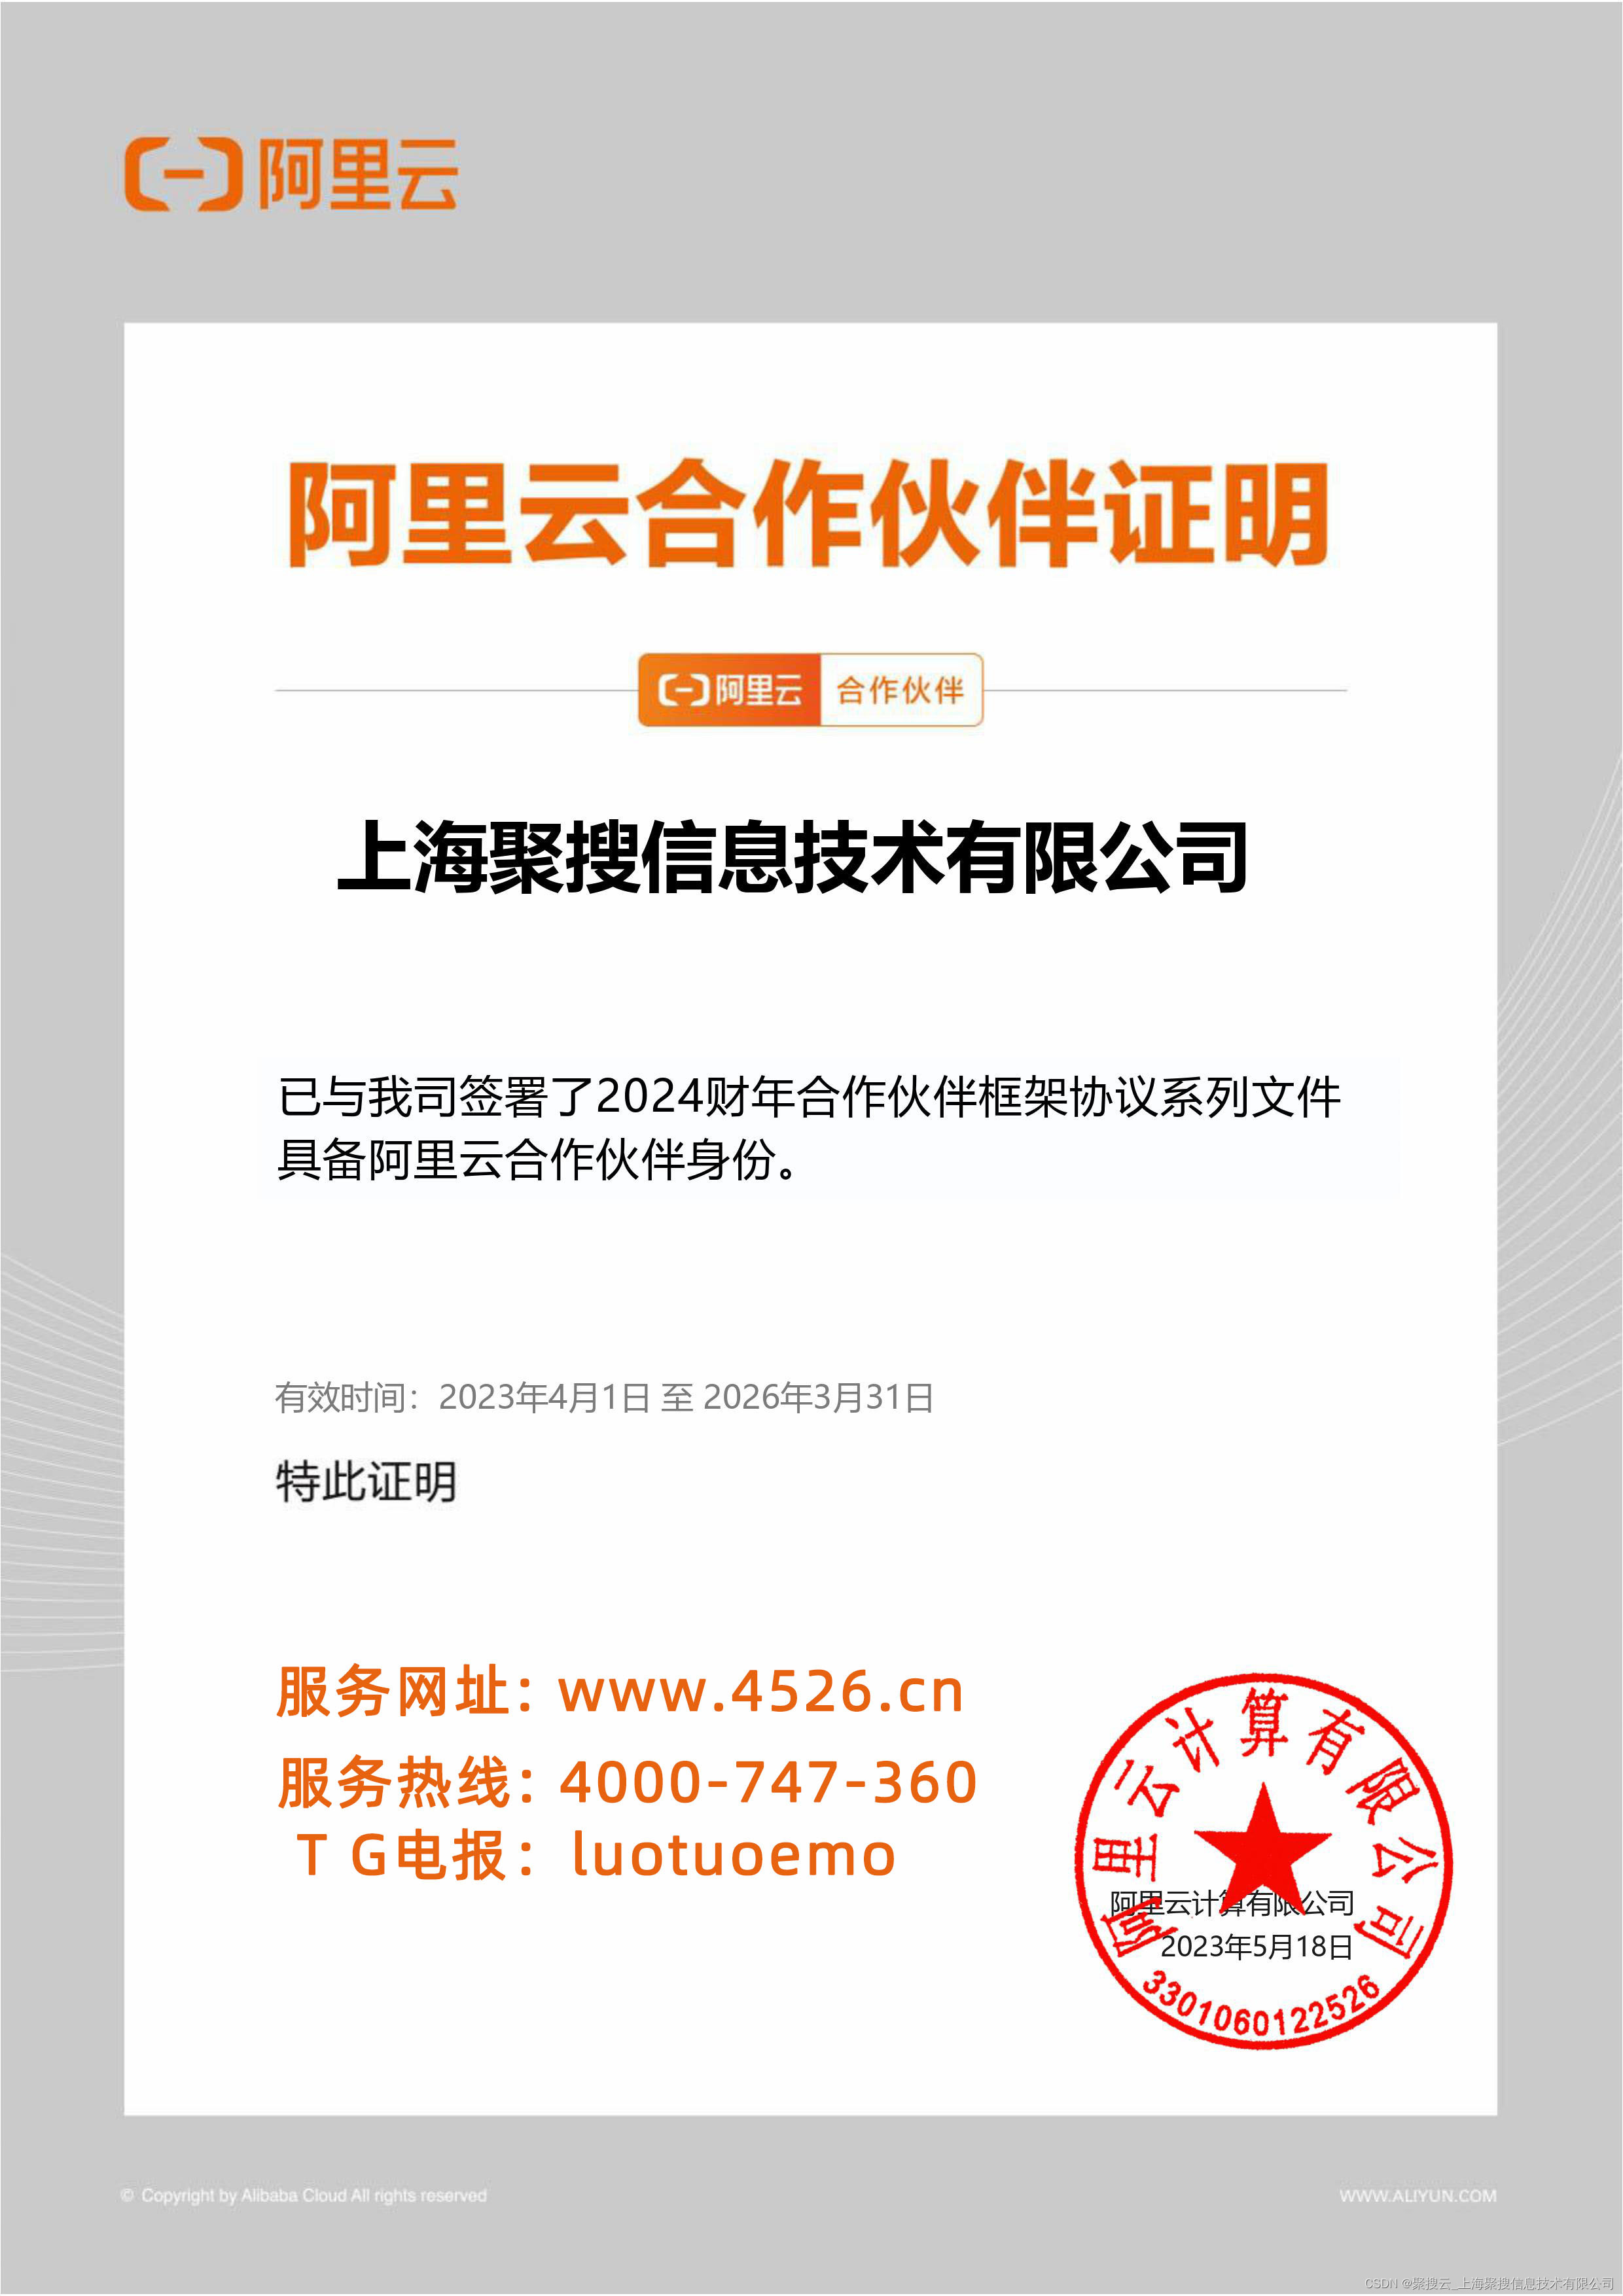 上海阿里云代理商：如何保护阿里云服务器中的敏感数据？有哪些加密和访问控制措施？